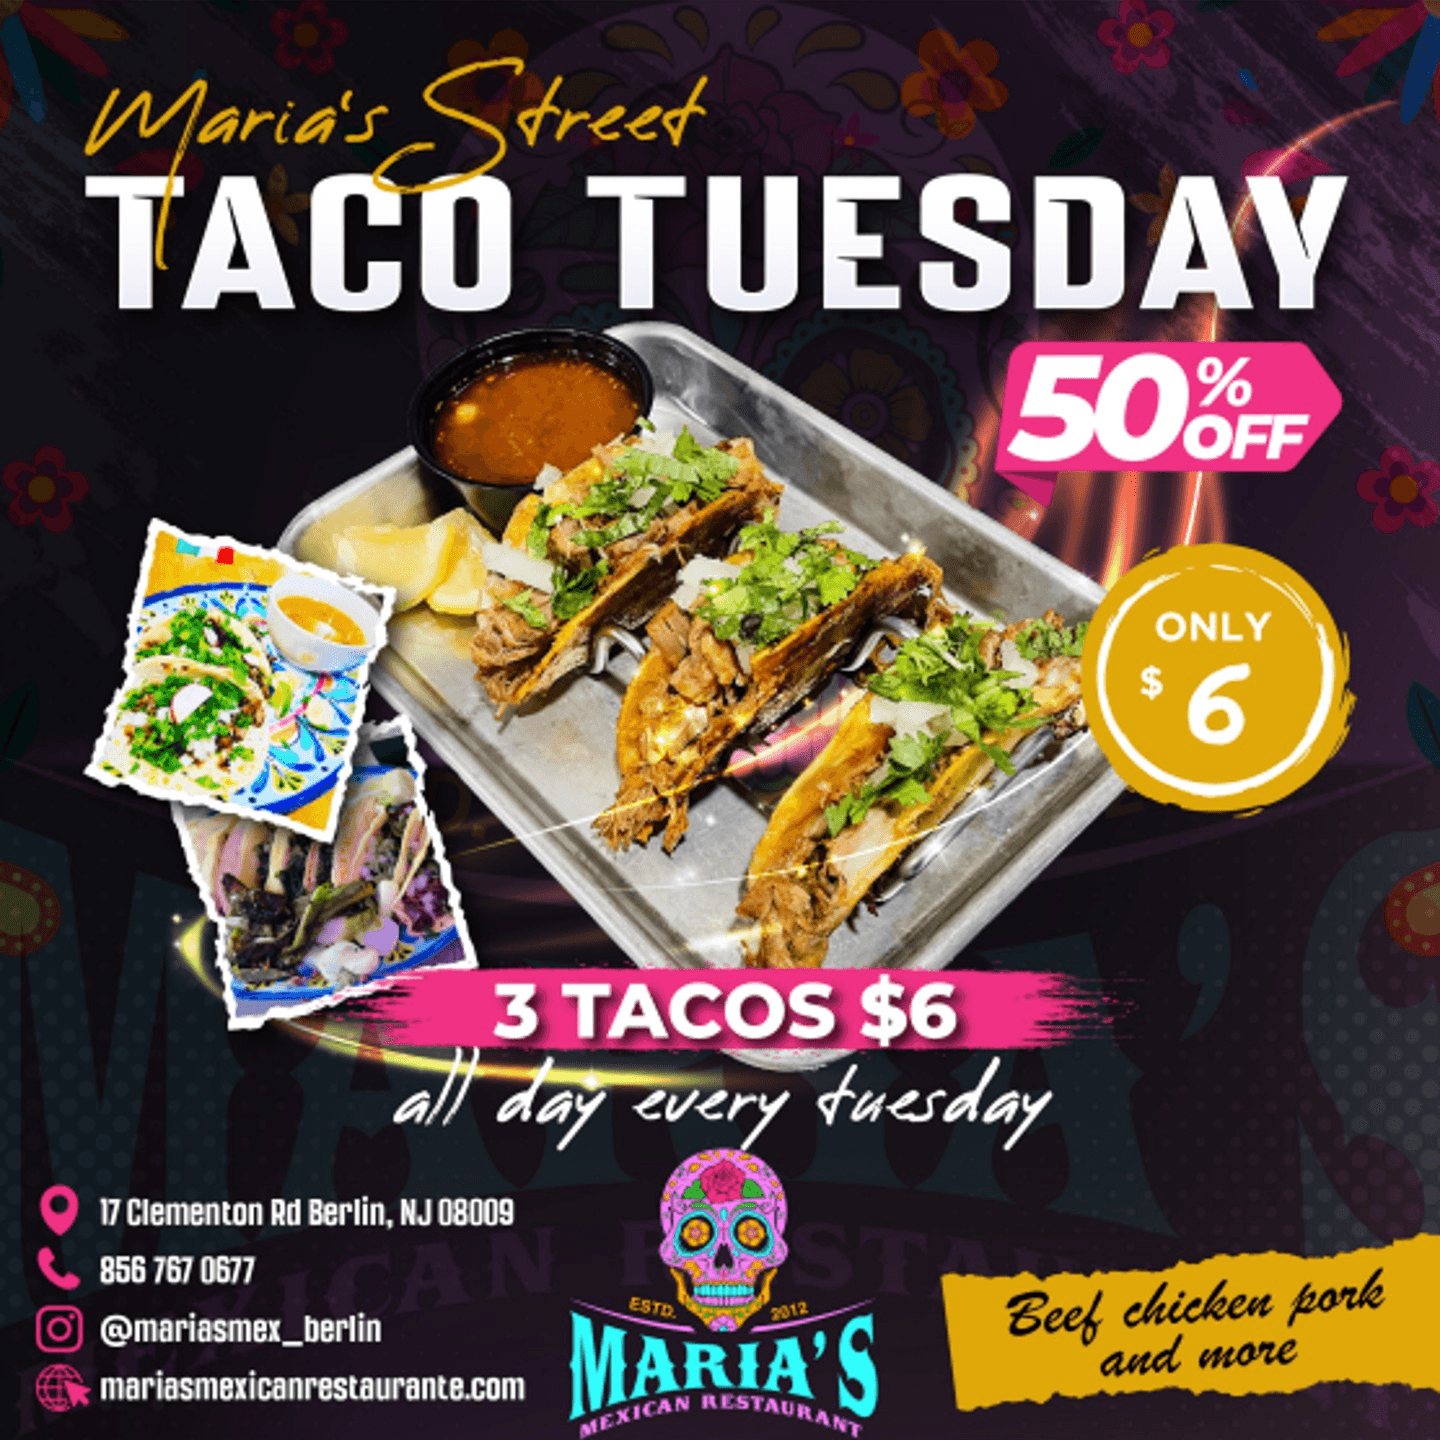 Maria's Street Taco Tuesday